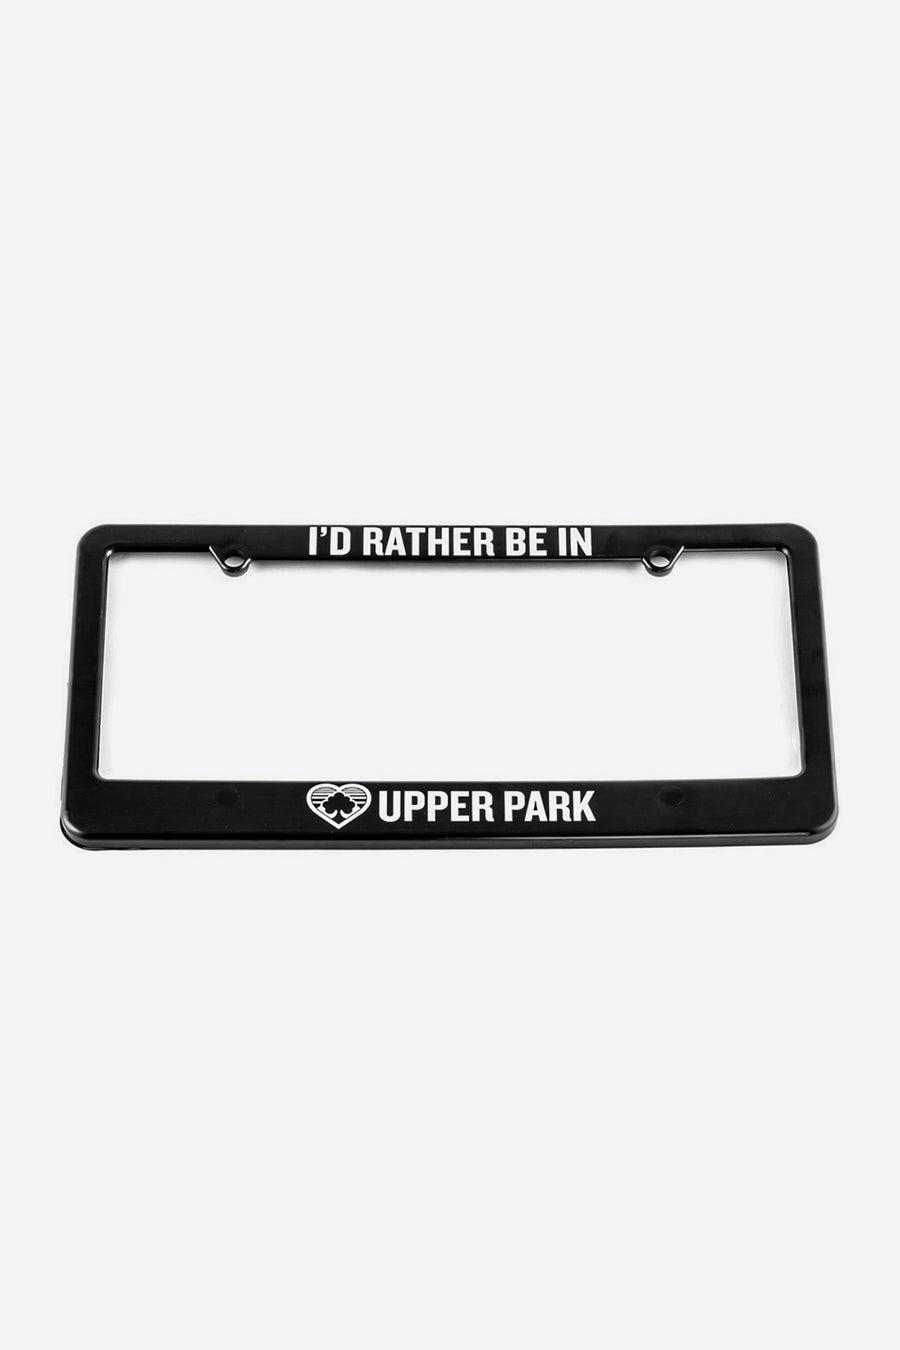 I'd Rather Be in Upper Park License Plate Frame